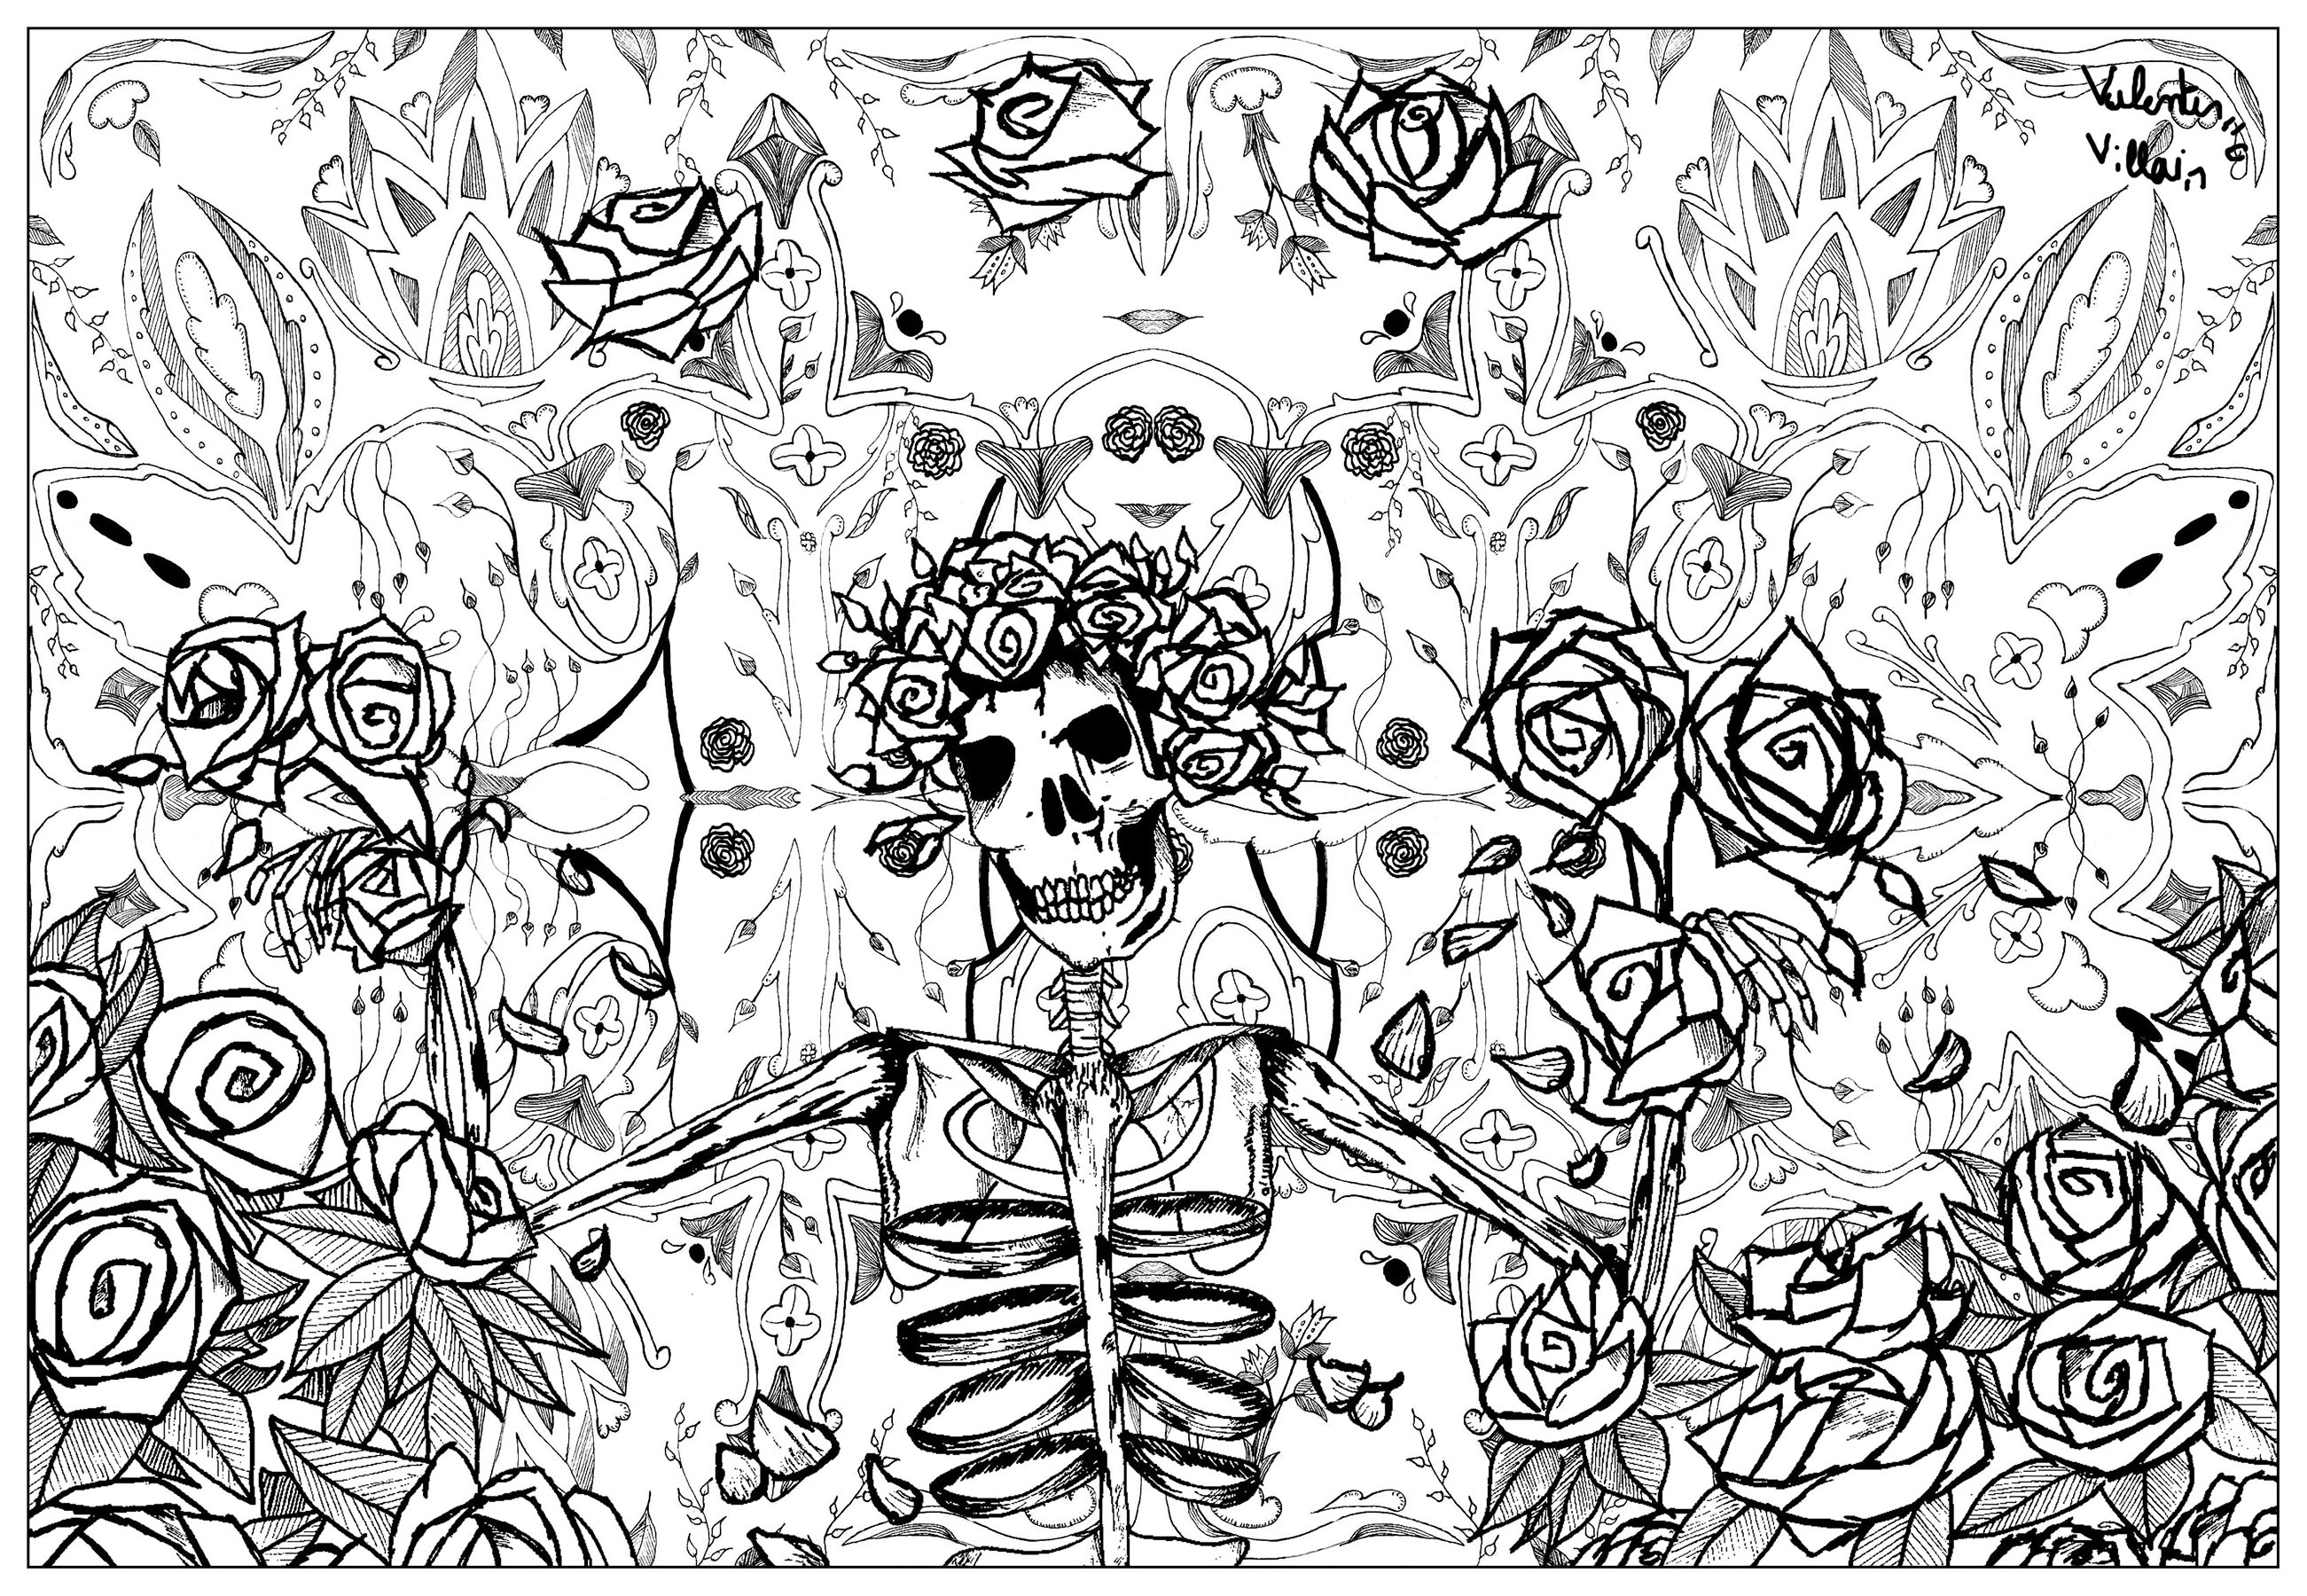 Originalillustration, inspiriert von den Bildern der amerikanischen Rockband Grateful Dead. Grateful Dead gilt als einer der Hauptvertreter der psychedelischen Bewegung.Diese Malvorlage ist perfekt für Musik- und Psychedelic-Liebhaber. Sie ermöglicht es dir, in ein einzigartiges Universum einzutauchen und deine Kreativität zu entwickeln, Künstler : Valentin